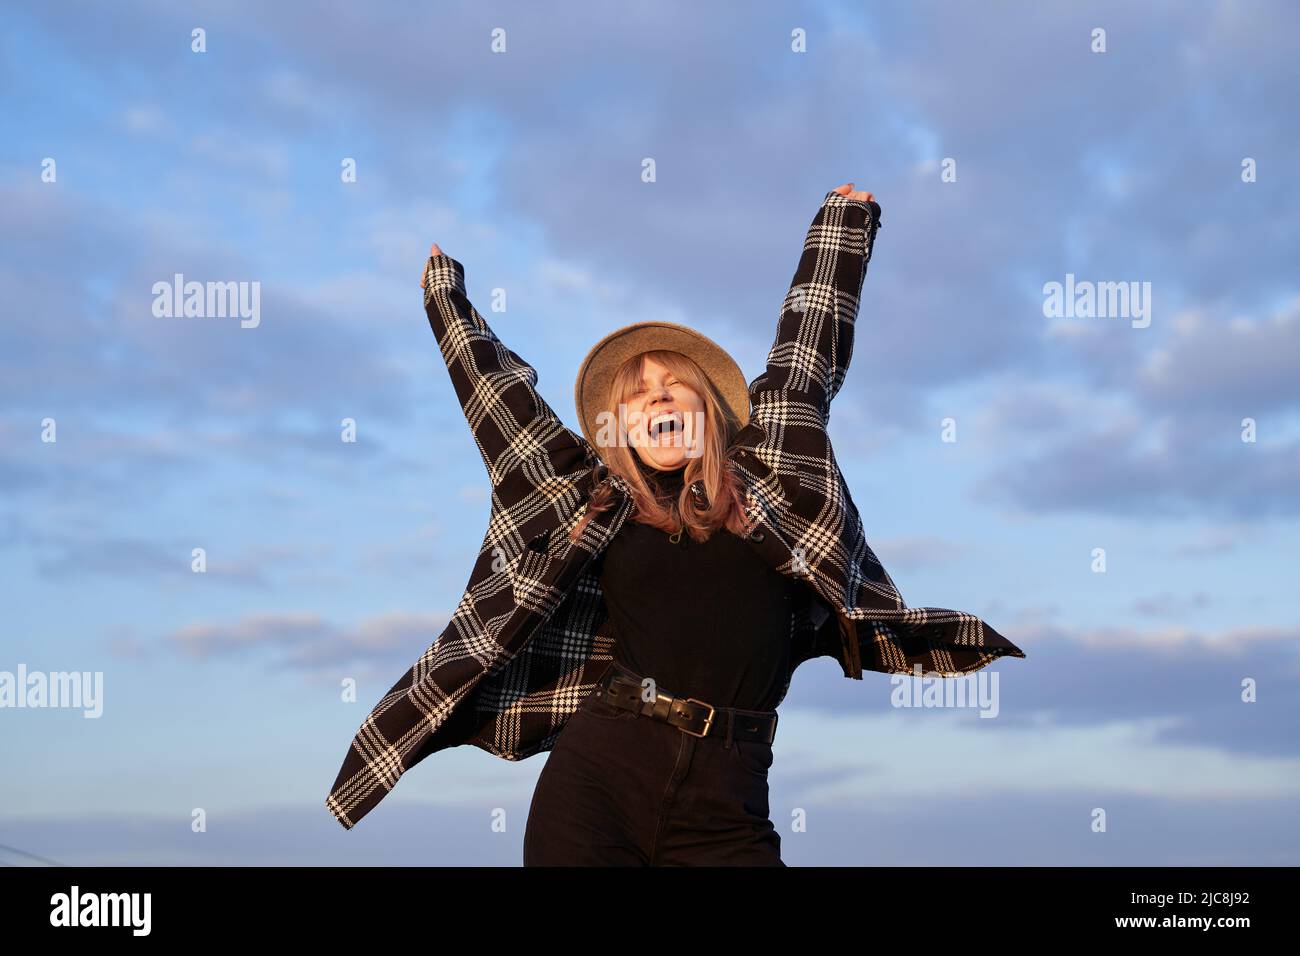 Hopster excitée jeune fille en chapeau, Jean noir et chemise danse sensation joyeuse ou insouciante émotion devant le ciel bleu nuageux. Triomphant, gagnant, expressif ou positif. Image de haute qualité Banque D'Images